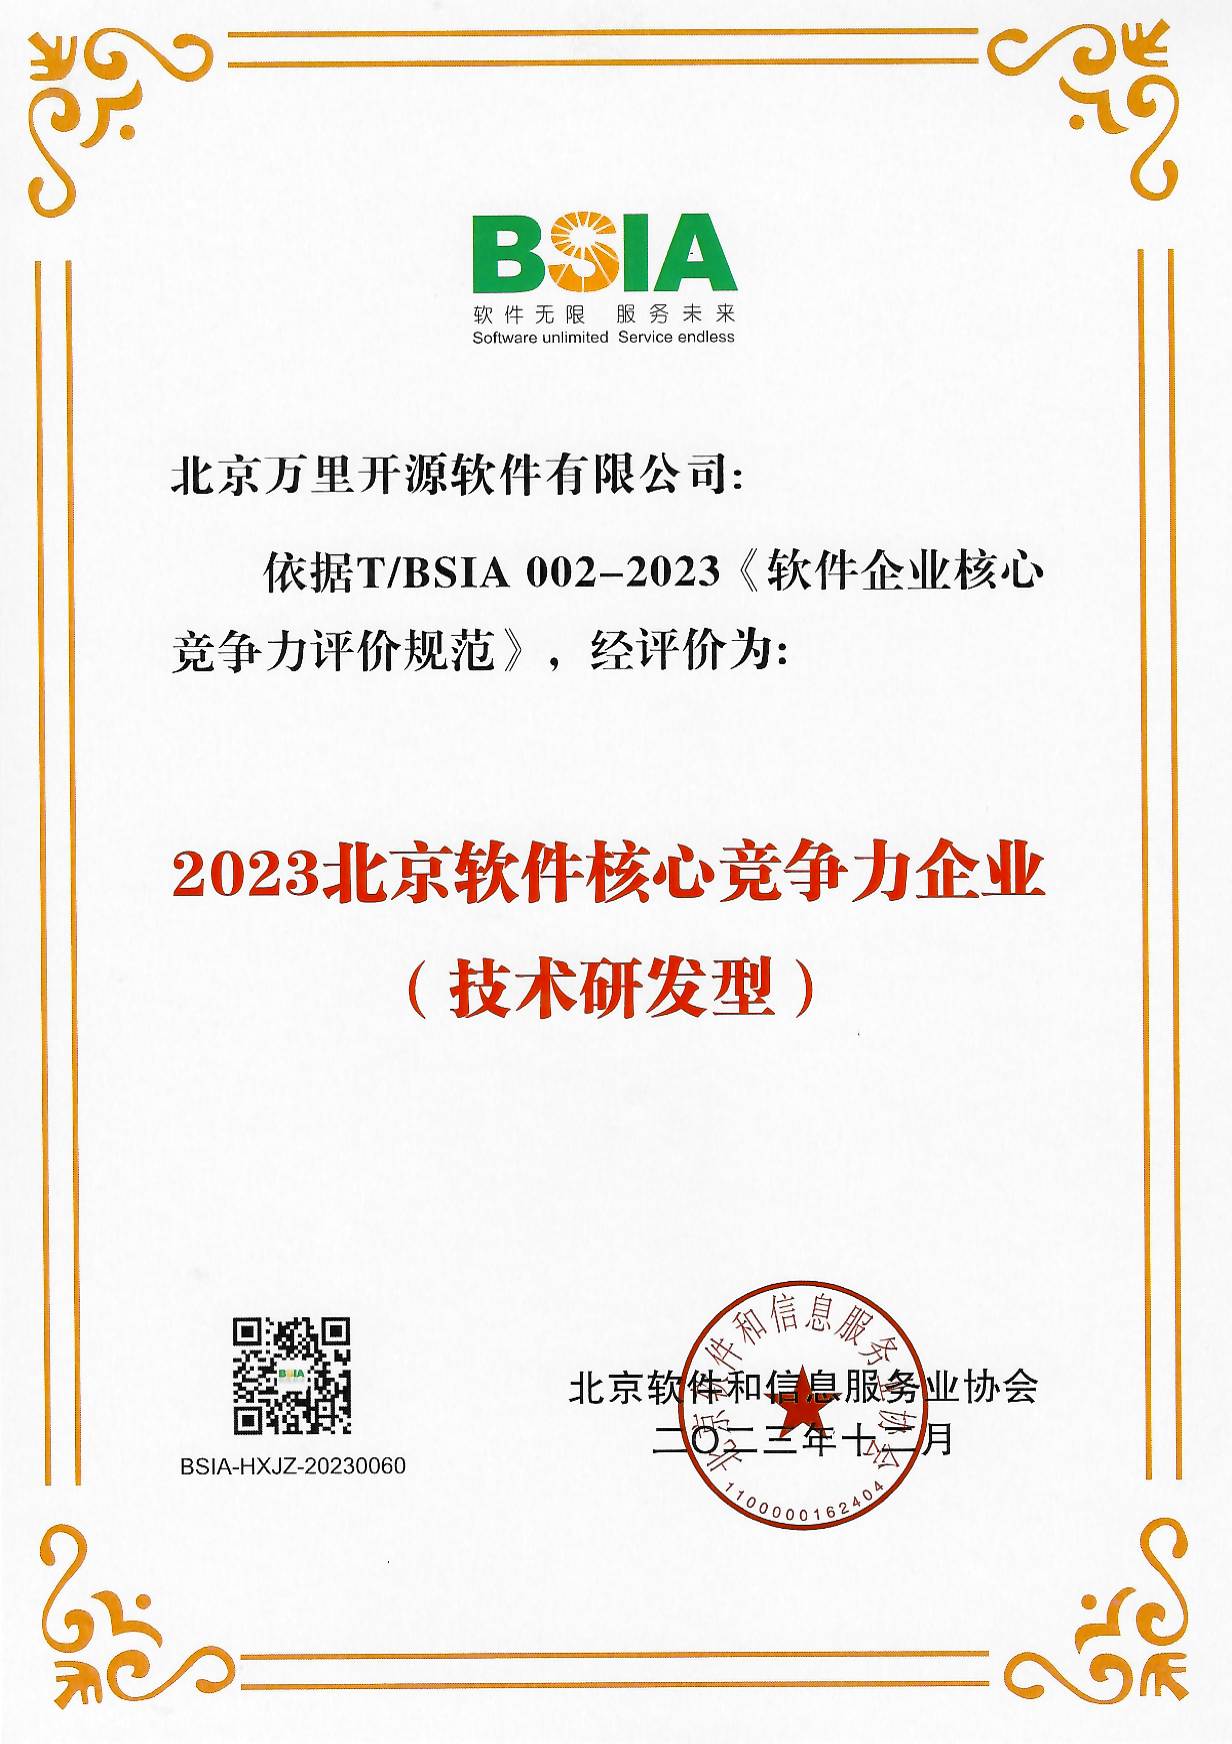 2023北京软件核心竞争力企业（技术研发型）(1).jpg